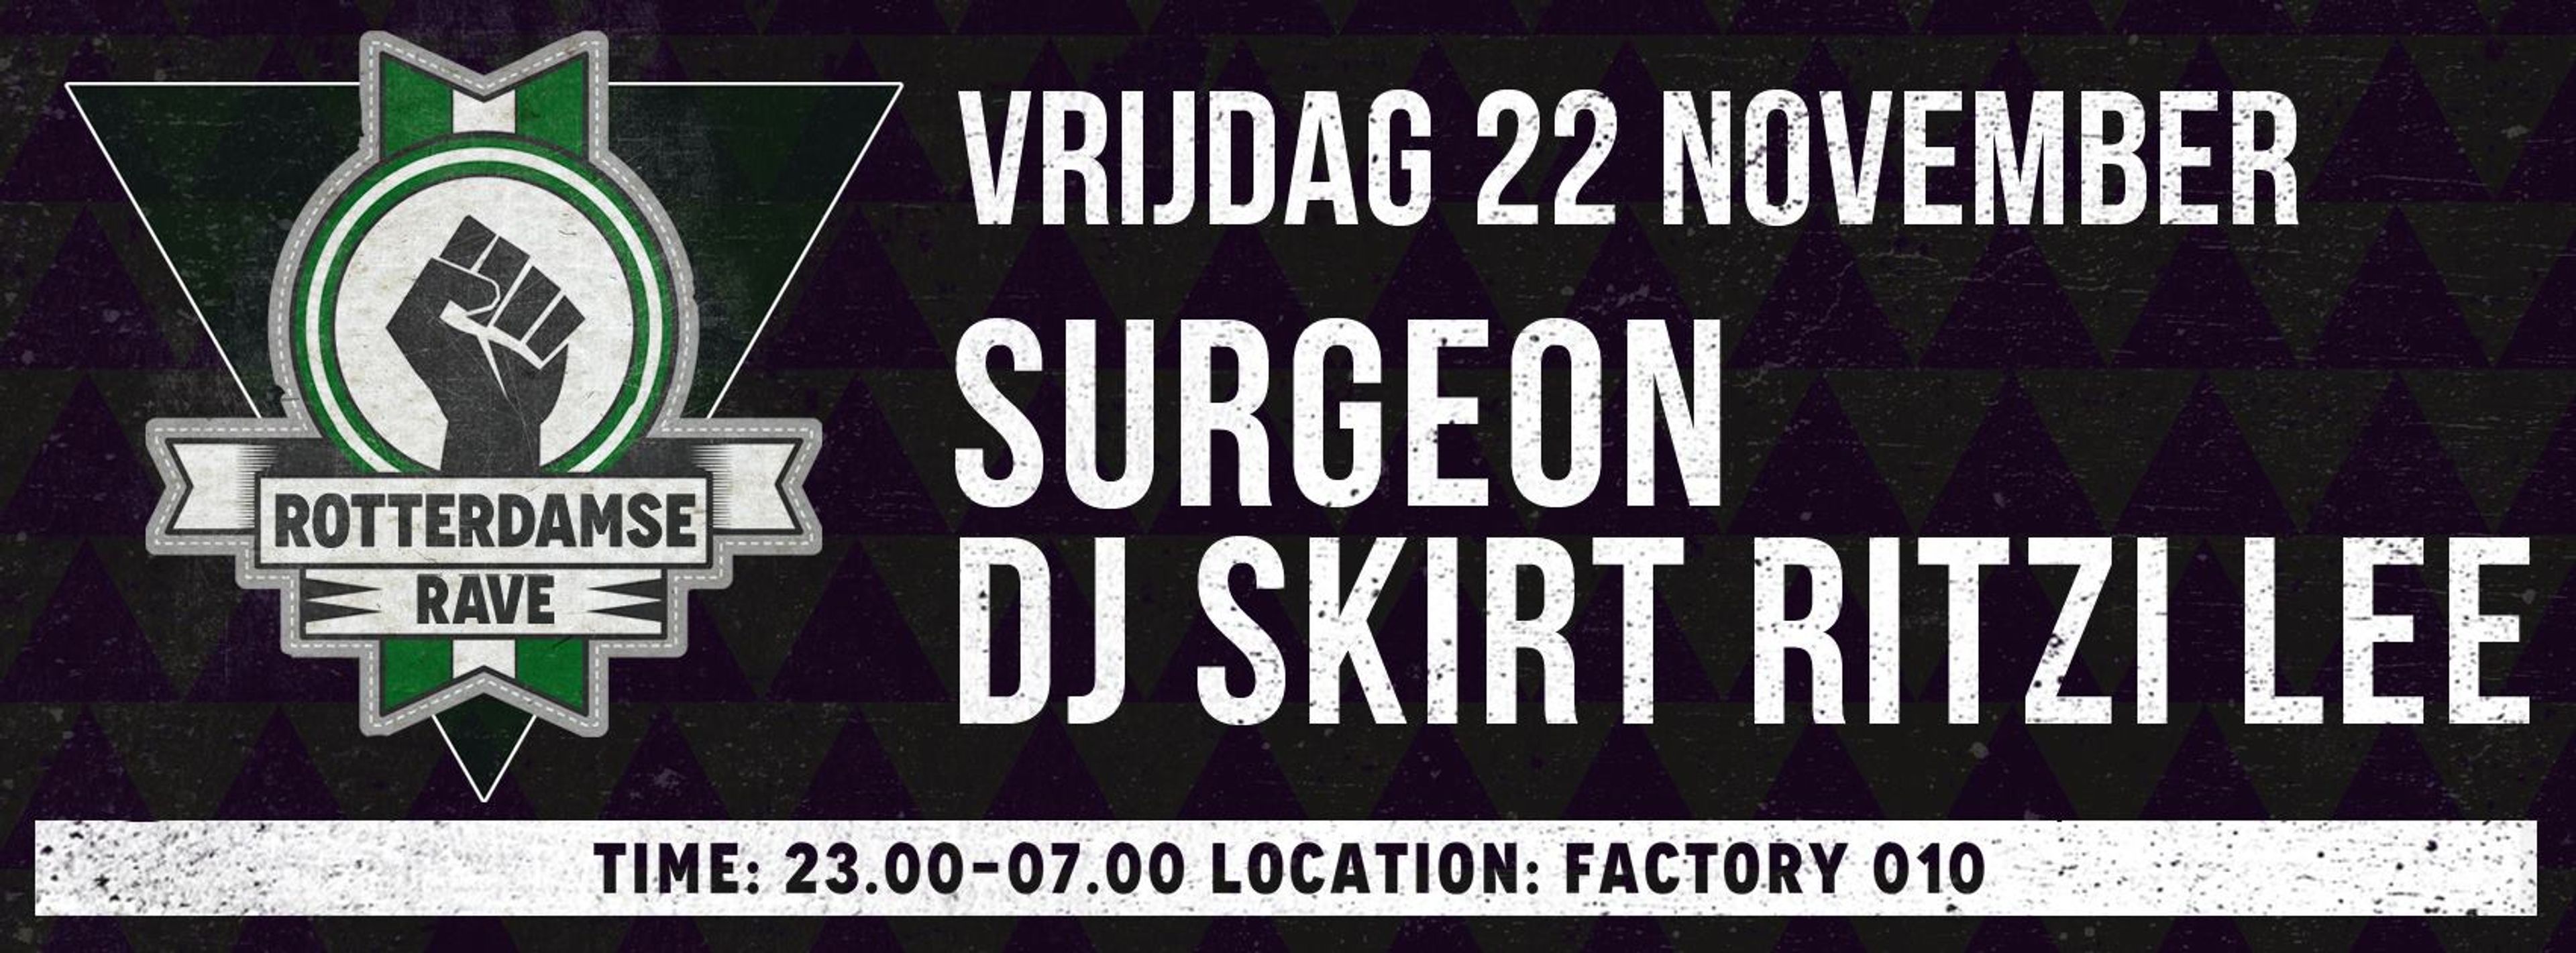 Rotterdamse Rave w/ Surgeon